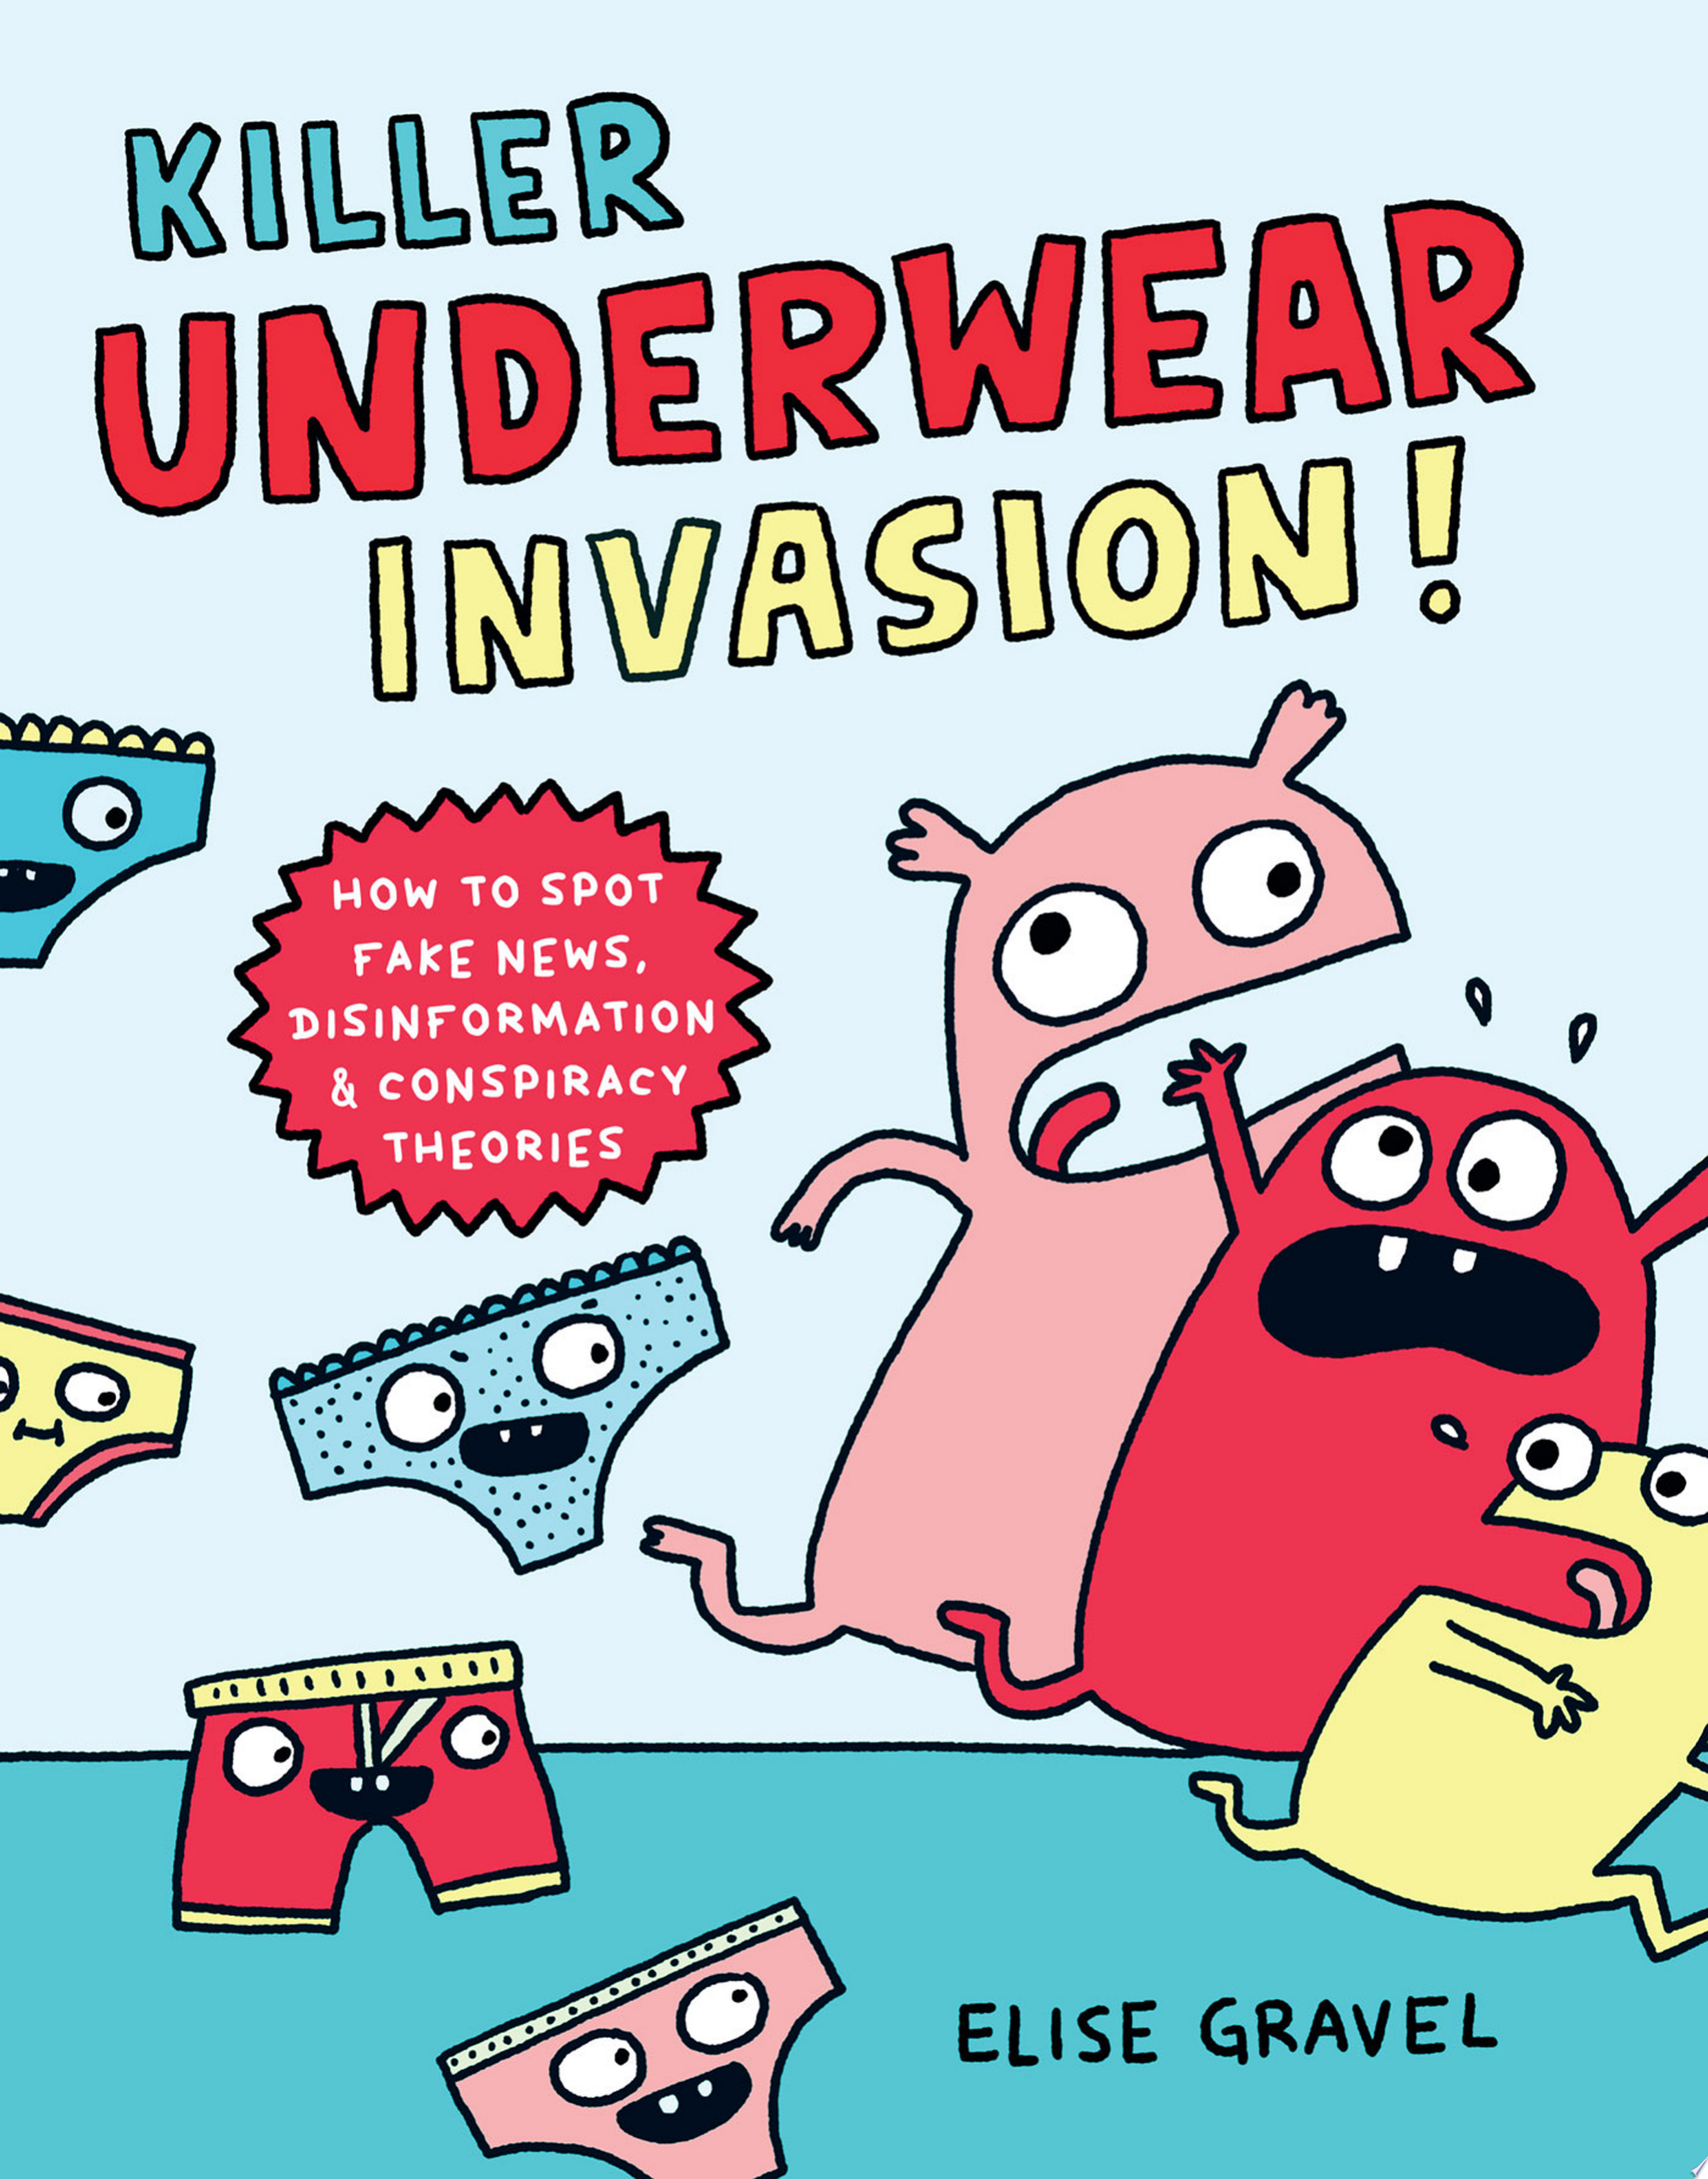 Image for "Killer Underwear Invasion!"